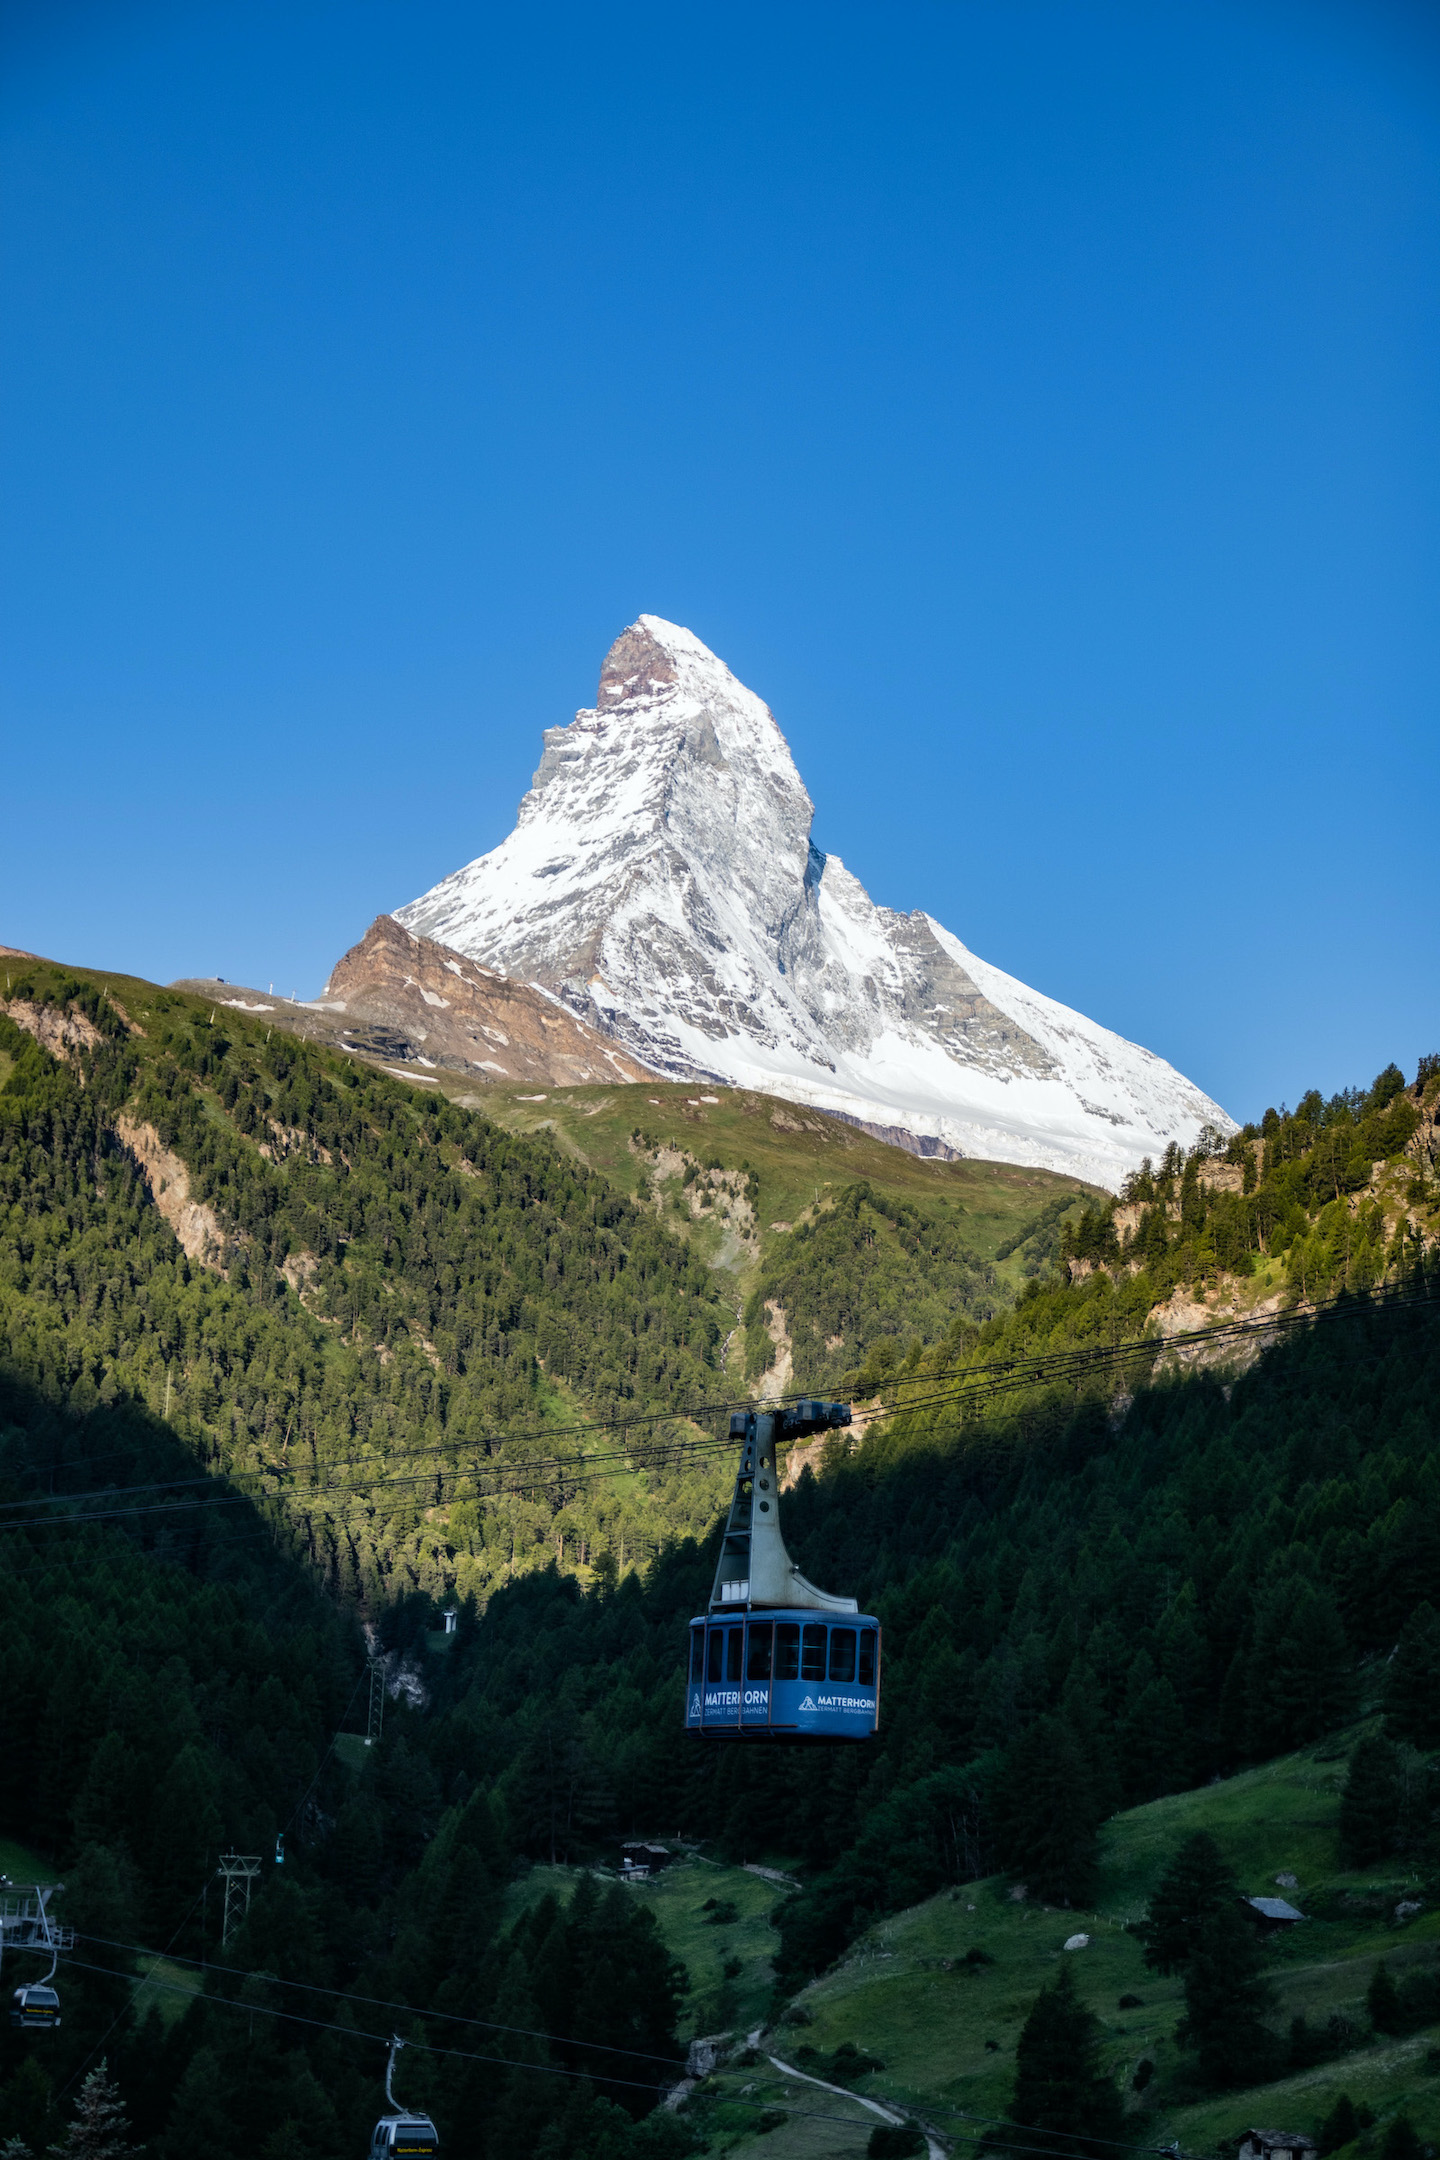 Matterhorn Focus Design Hotel